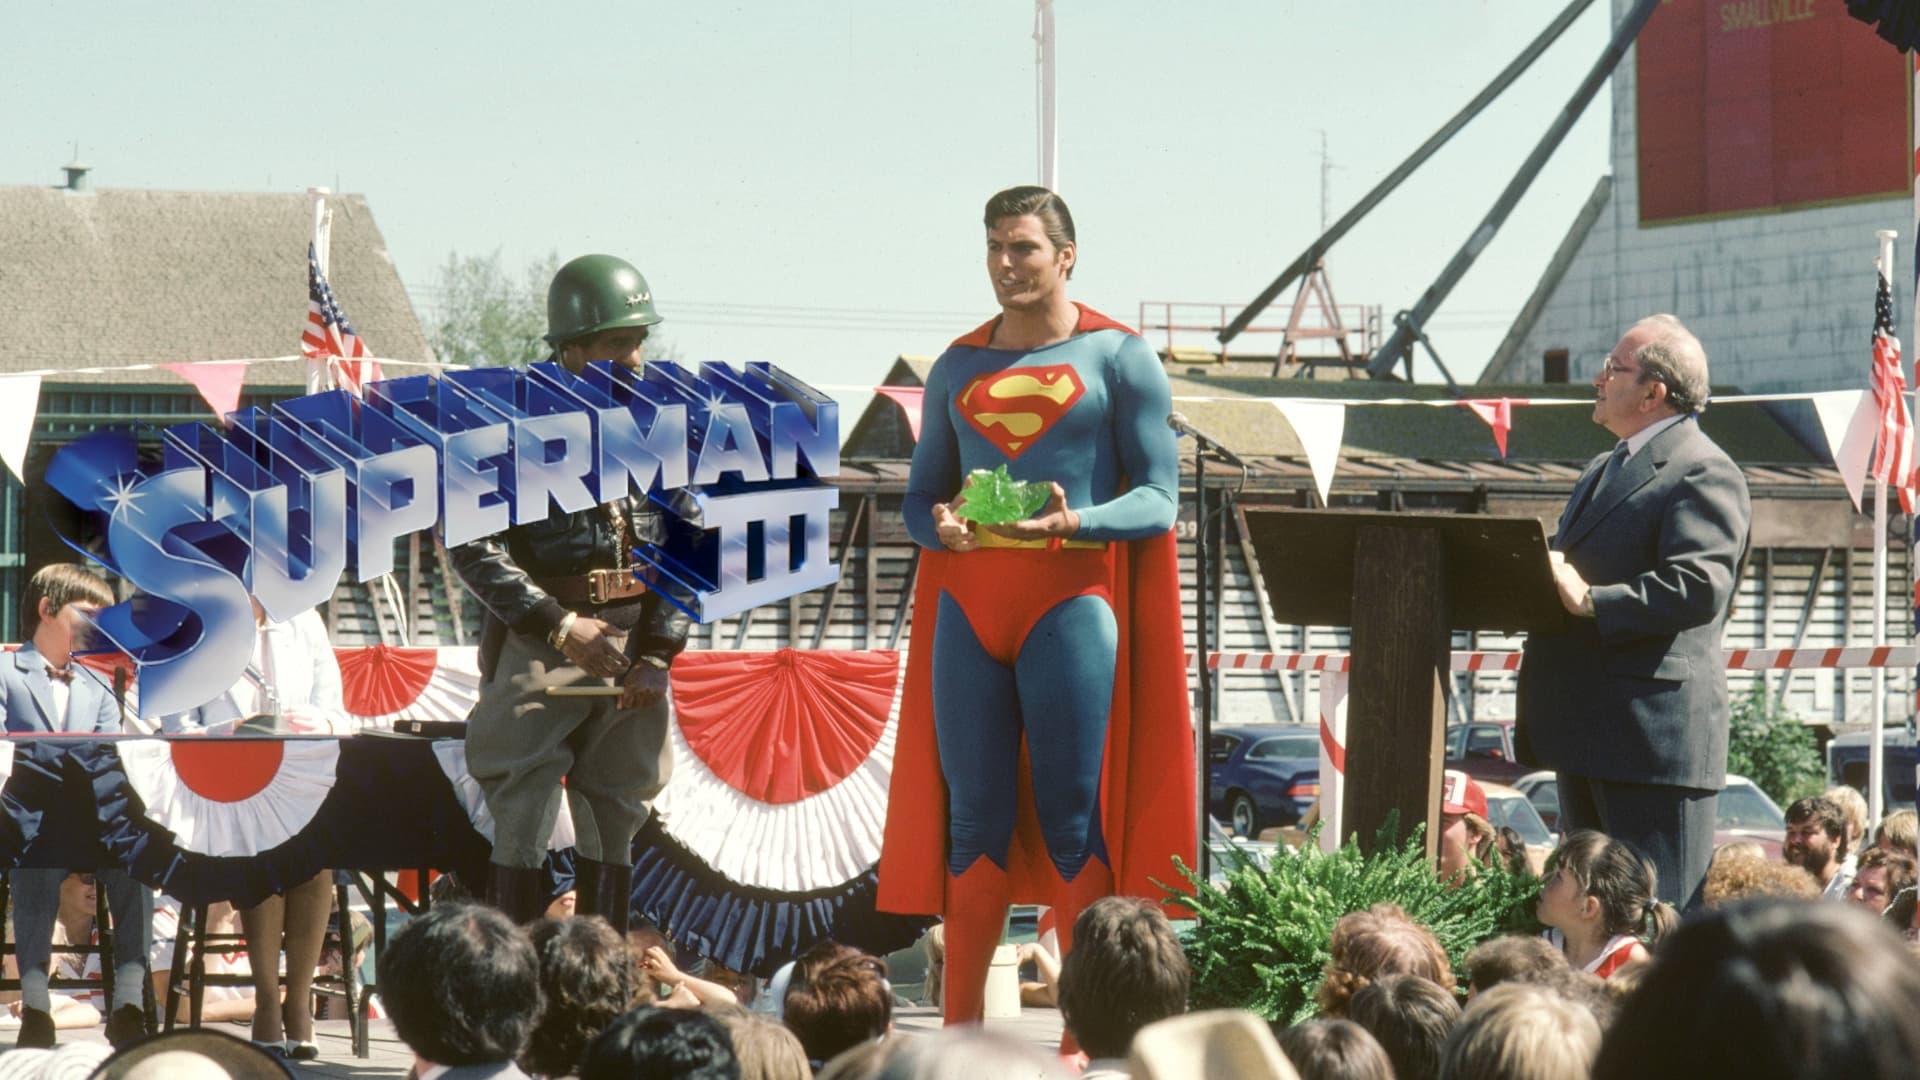 Superman III - Der stählerne Blitz (1983)